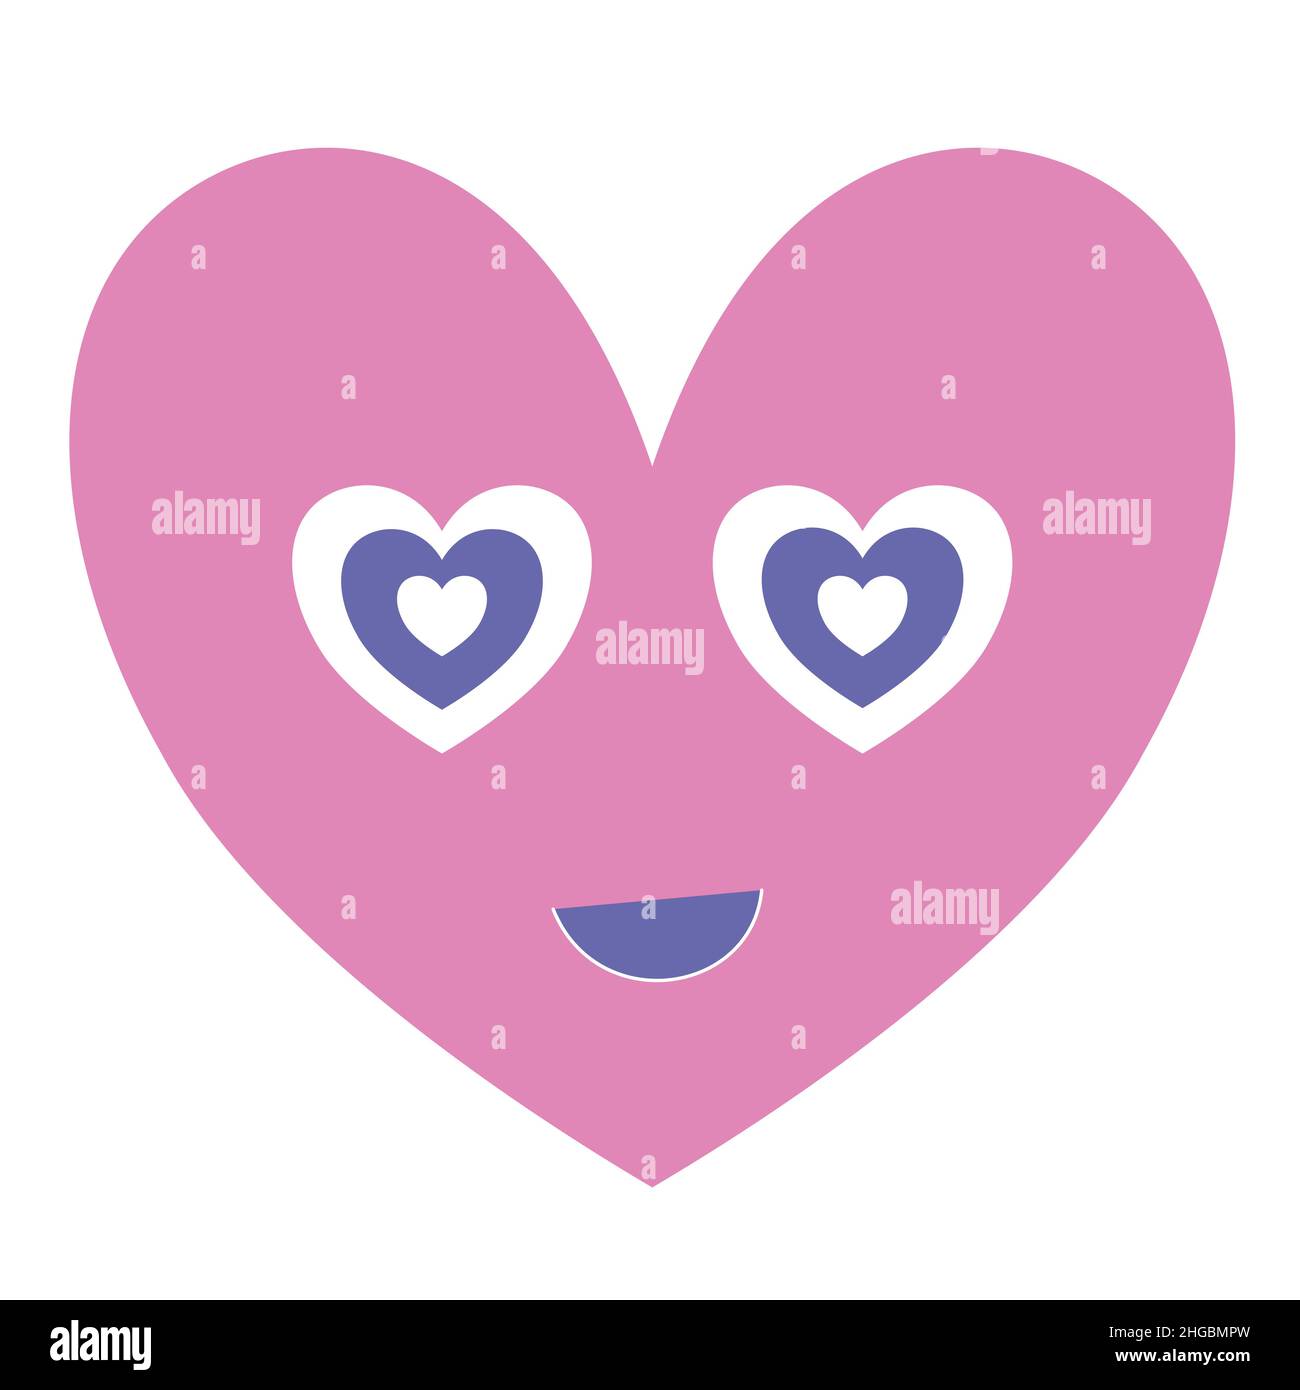 Niedliches Smiley-Herz-Emoji in Pastellfarben. Romantischer Valentinstag Charakter isoliert auf weiß. Sich für immer verliebt fühlen Stock Vektor